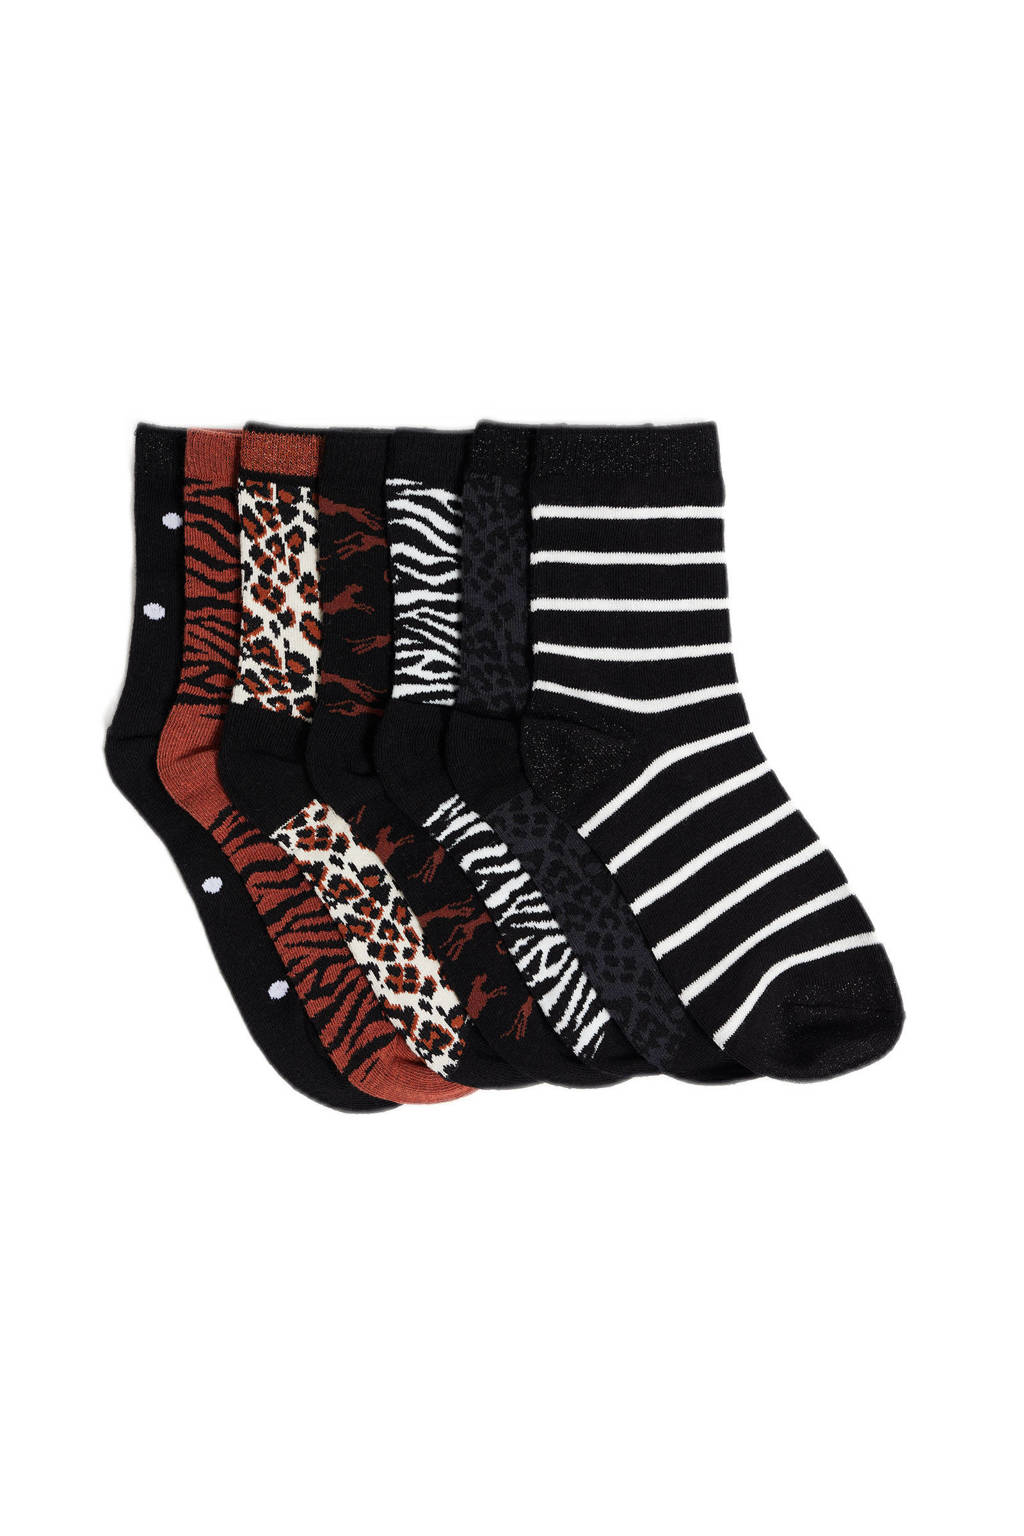 kloon Avondeten laag WE Fashion sokken met all-over dierenprint - set van 7 zwart/bruin | wehkamp